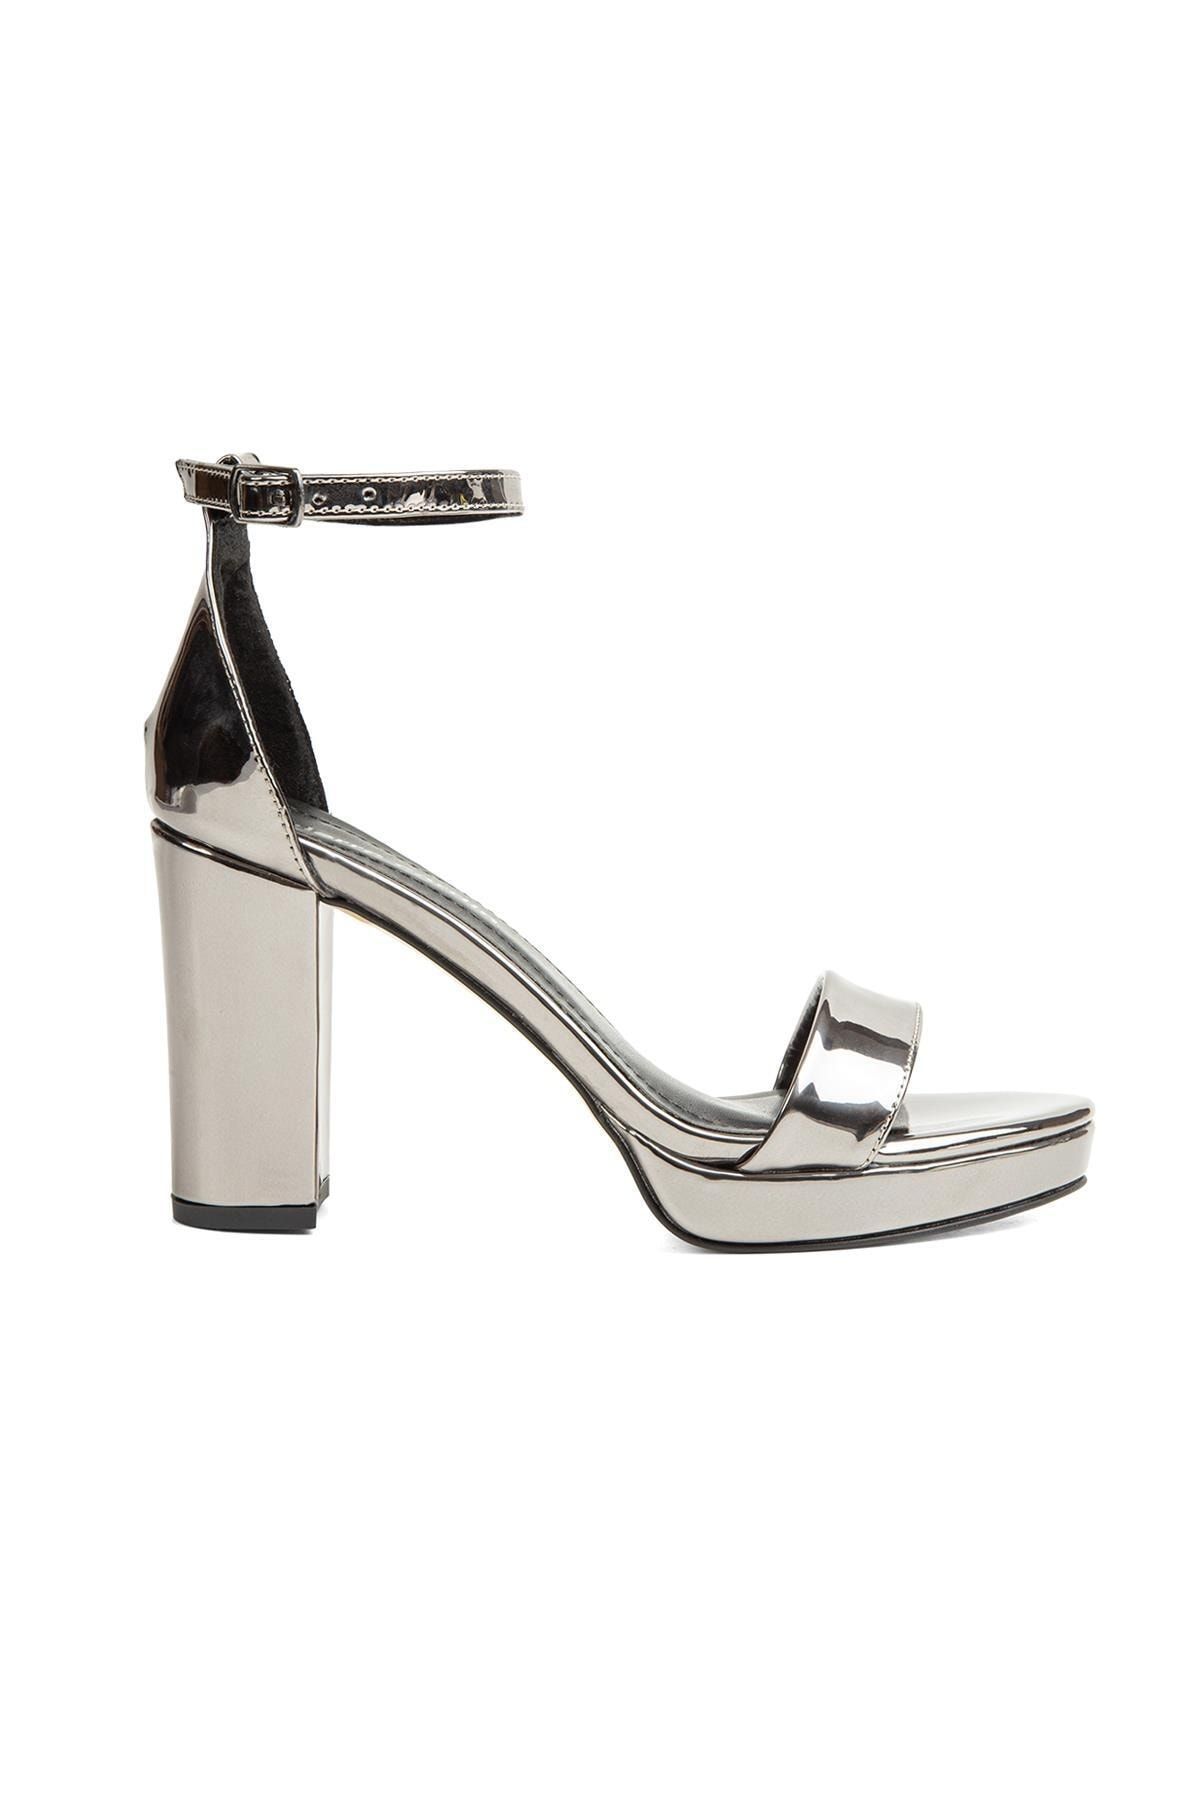 Pierre Cardin ® | Pc-50167 - 3822 Parlak Platın - Kadın Topuklu Ayakkabı